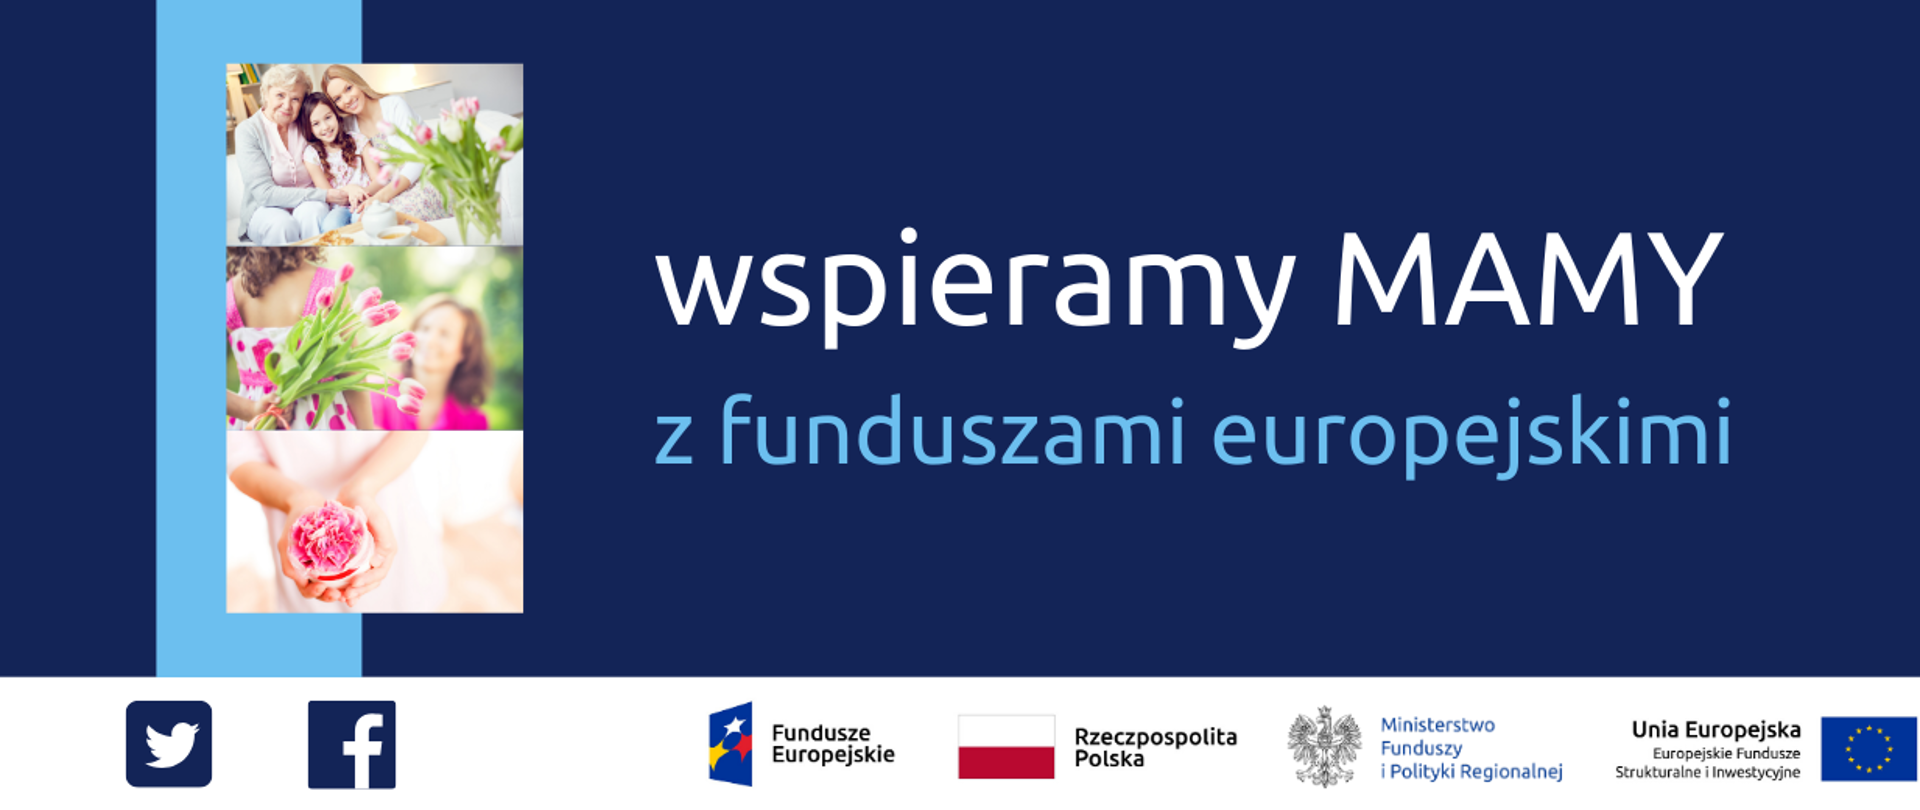 Napis: wspieramy mamy z funduszami europejskimi. Po lewej trzy zdjęcia: babci, mamy, córki, dziewczynki dającej kwiaty mamie oraz róży w rękach dziecka. Na dole ikonki Facebooka oraz Twittera, logotypy Funduszy Europejskich i Ministerstwa Funduszy i Polityki Regionalnej, flaga Polski.